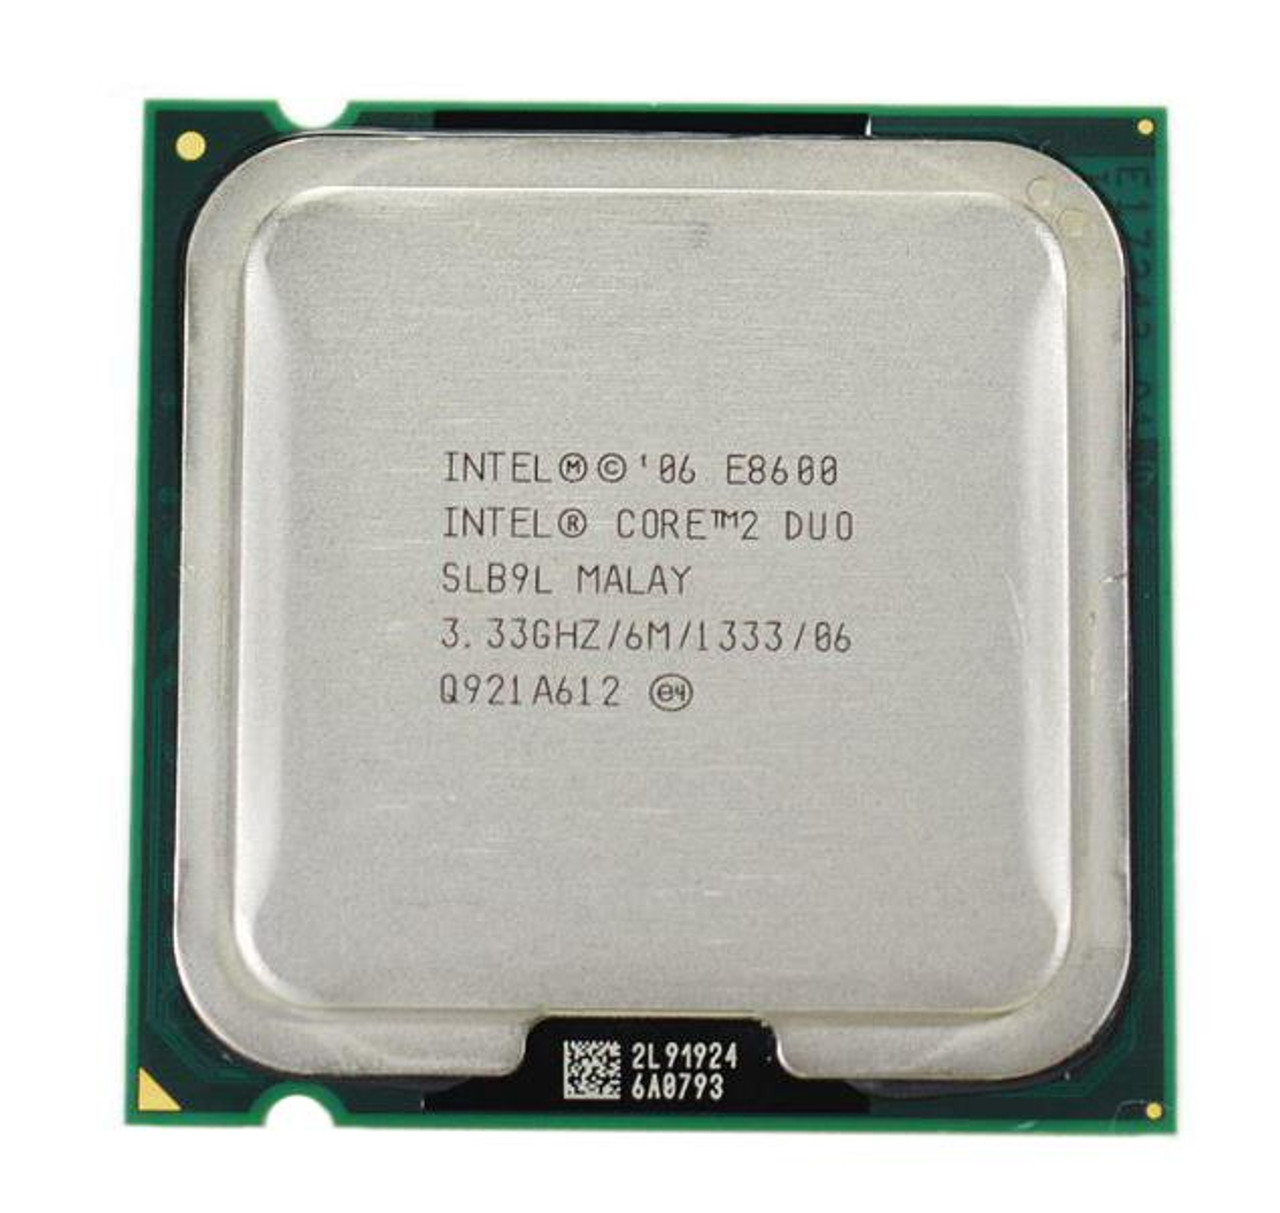 Dell 3.33GHz 1333MHz FSB 6MB L2 Cache Intel Core 2 Duo E8600 Processor Upgrade